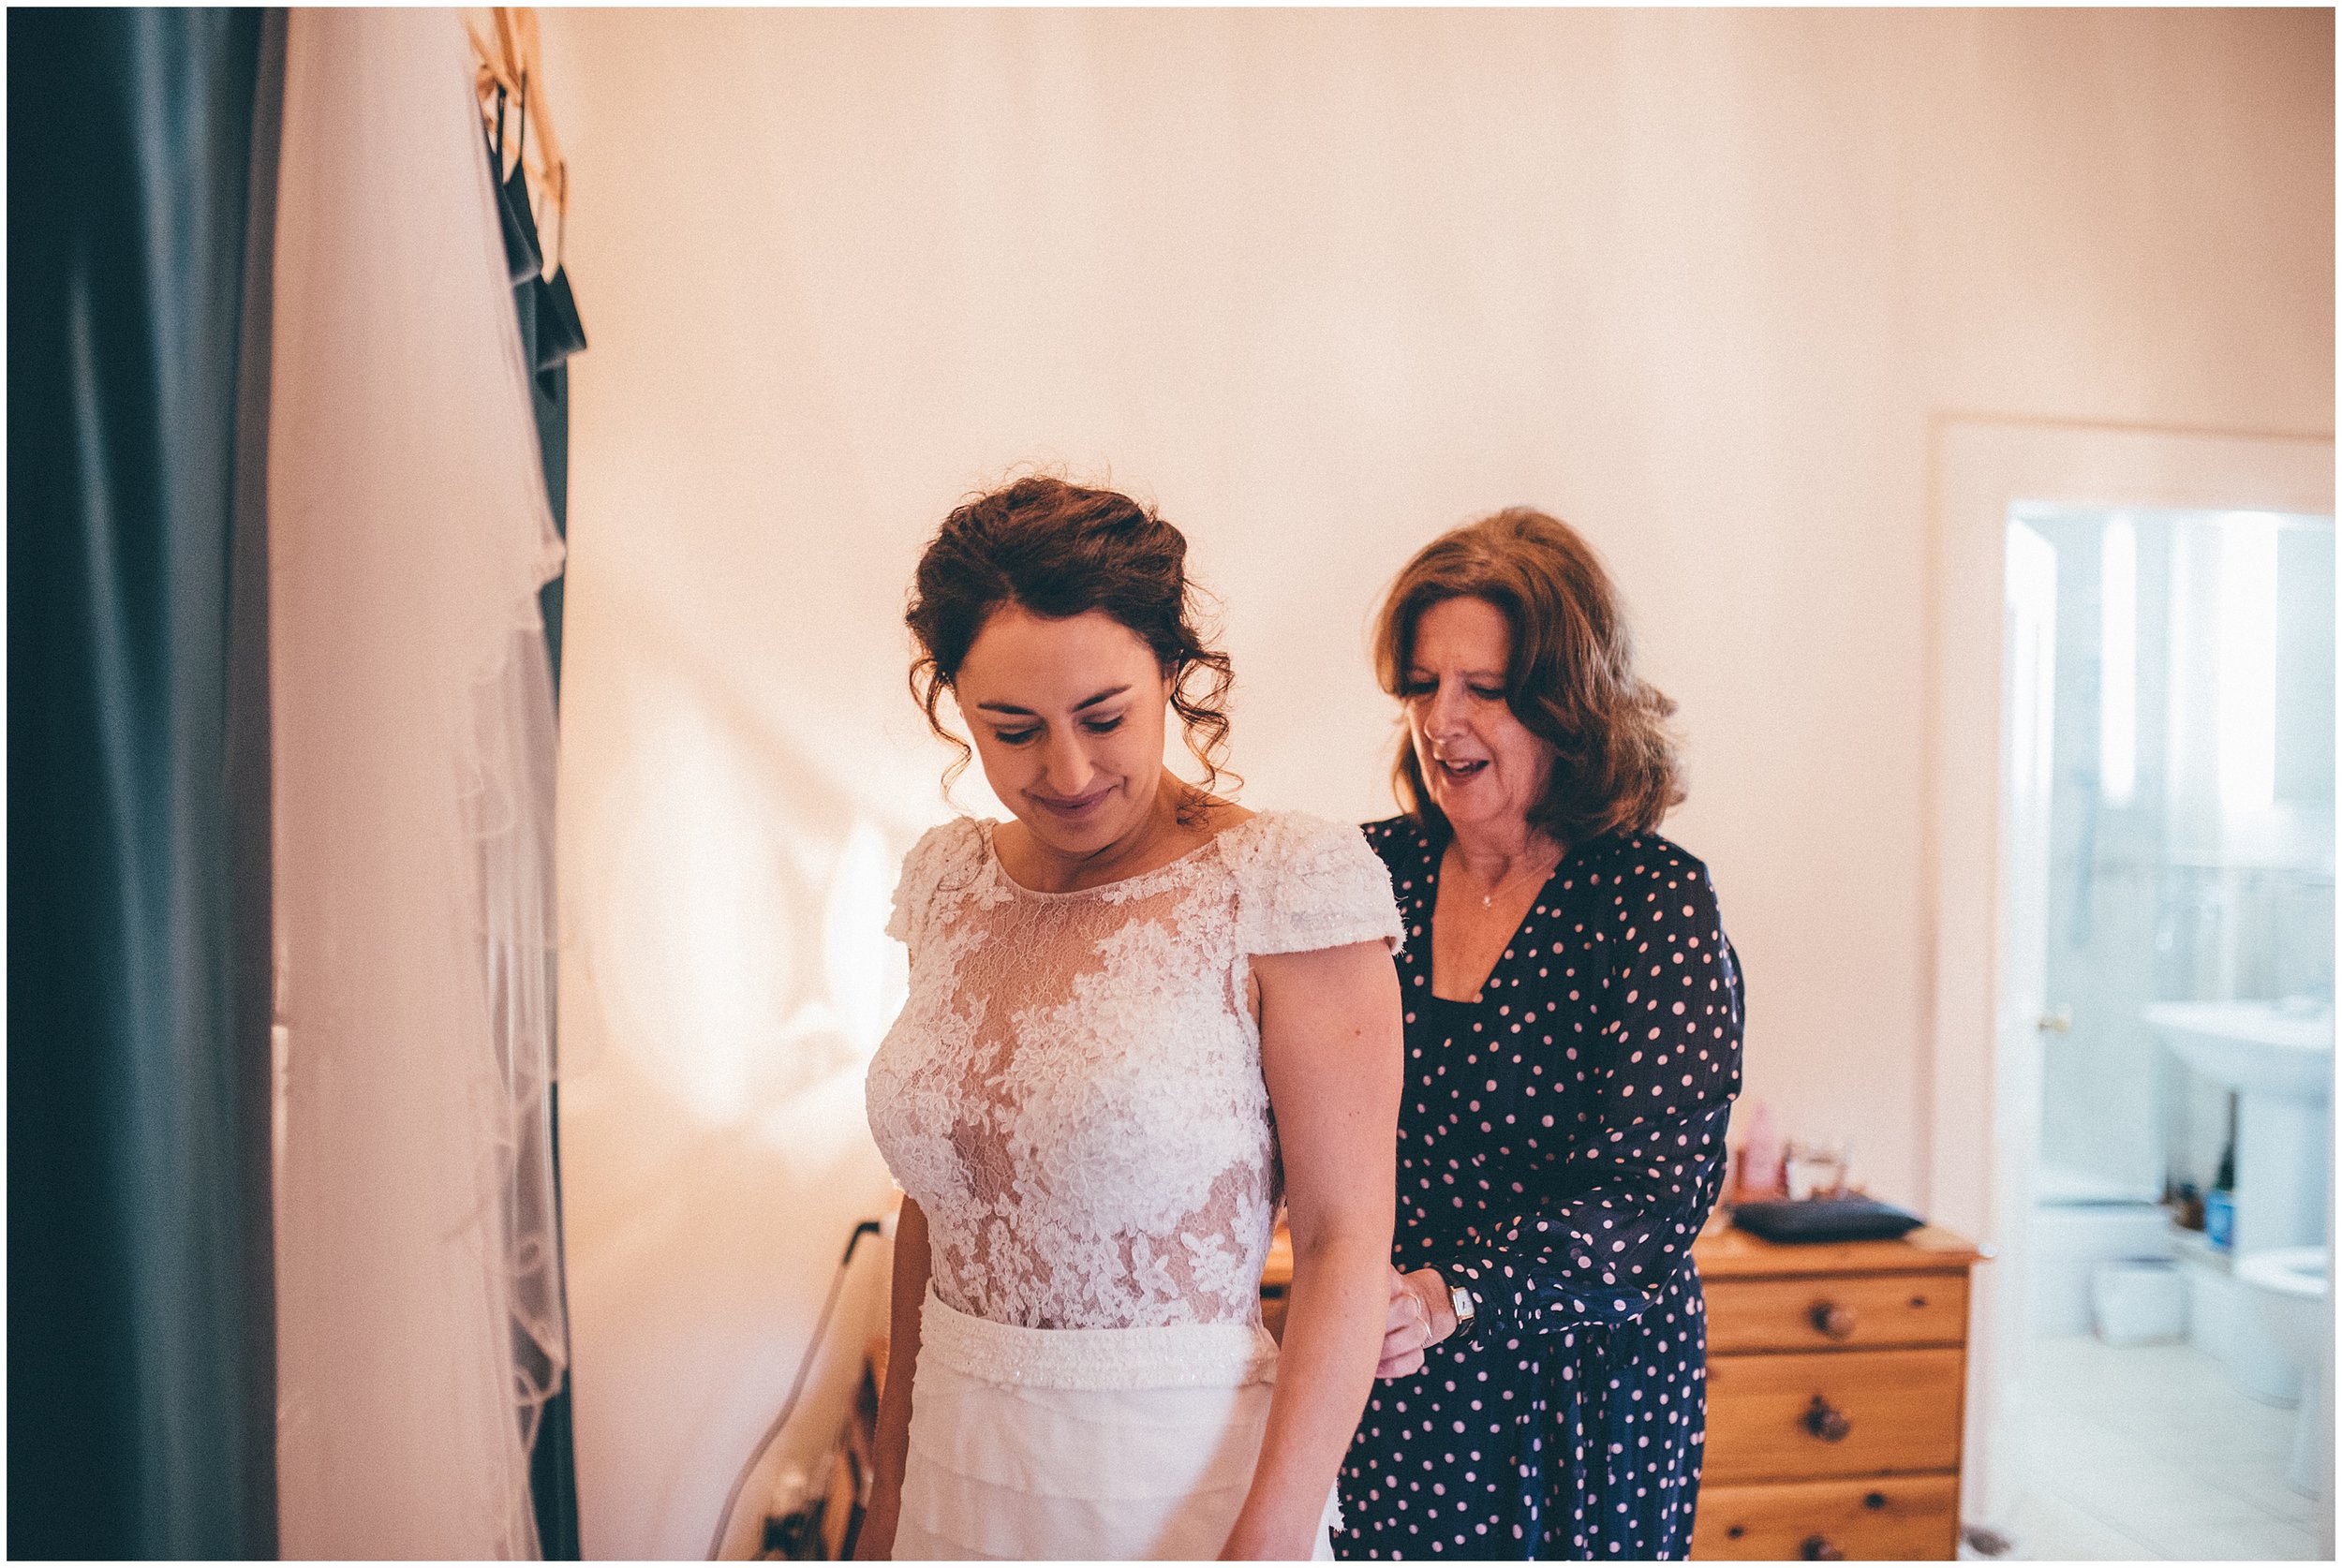 Bride's mum helps her daughter into her wedding dress